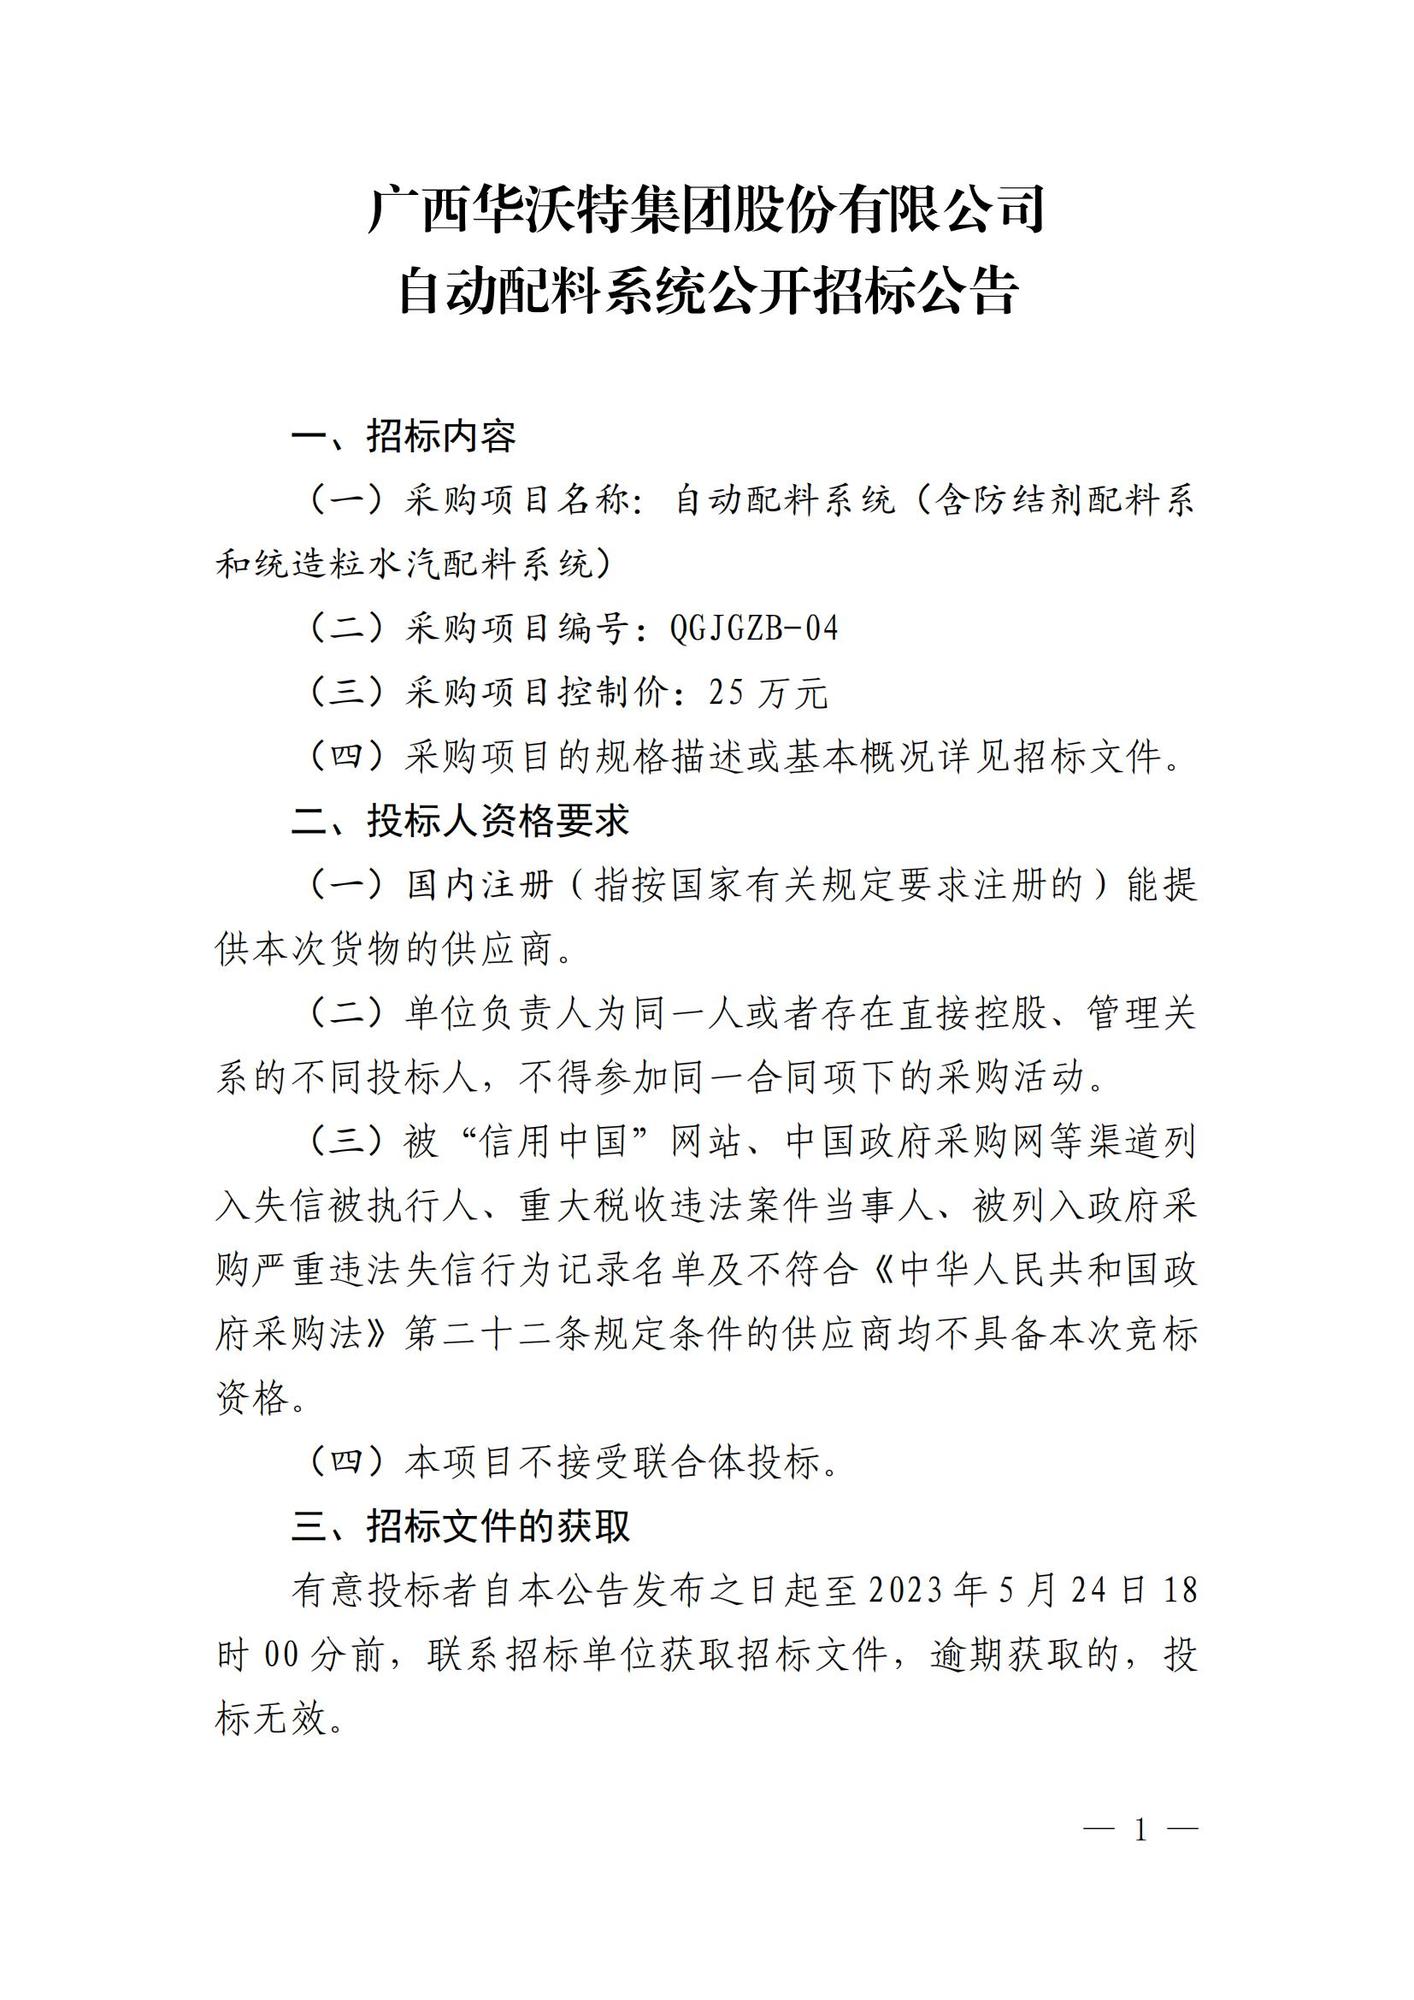 广西华沃特集团股份有限公司自动配料系统公开招标公告_00.jpg